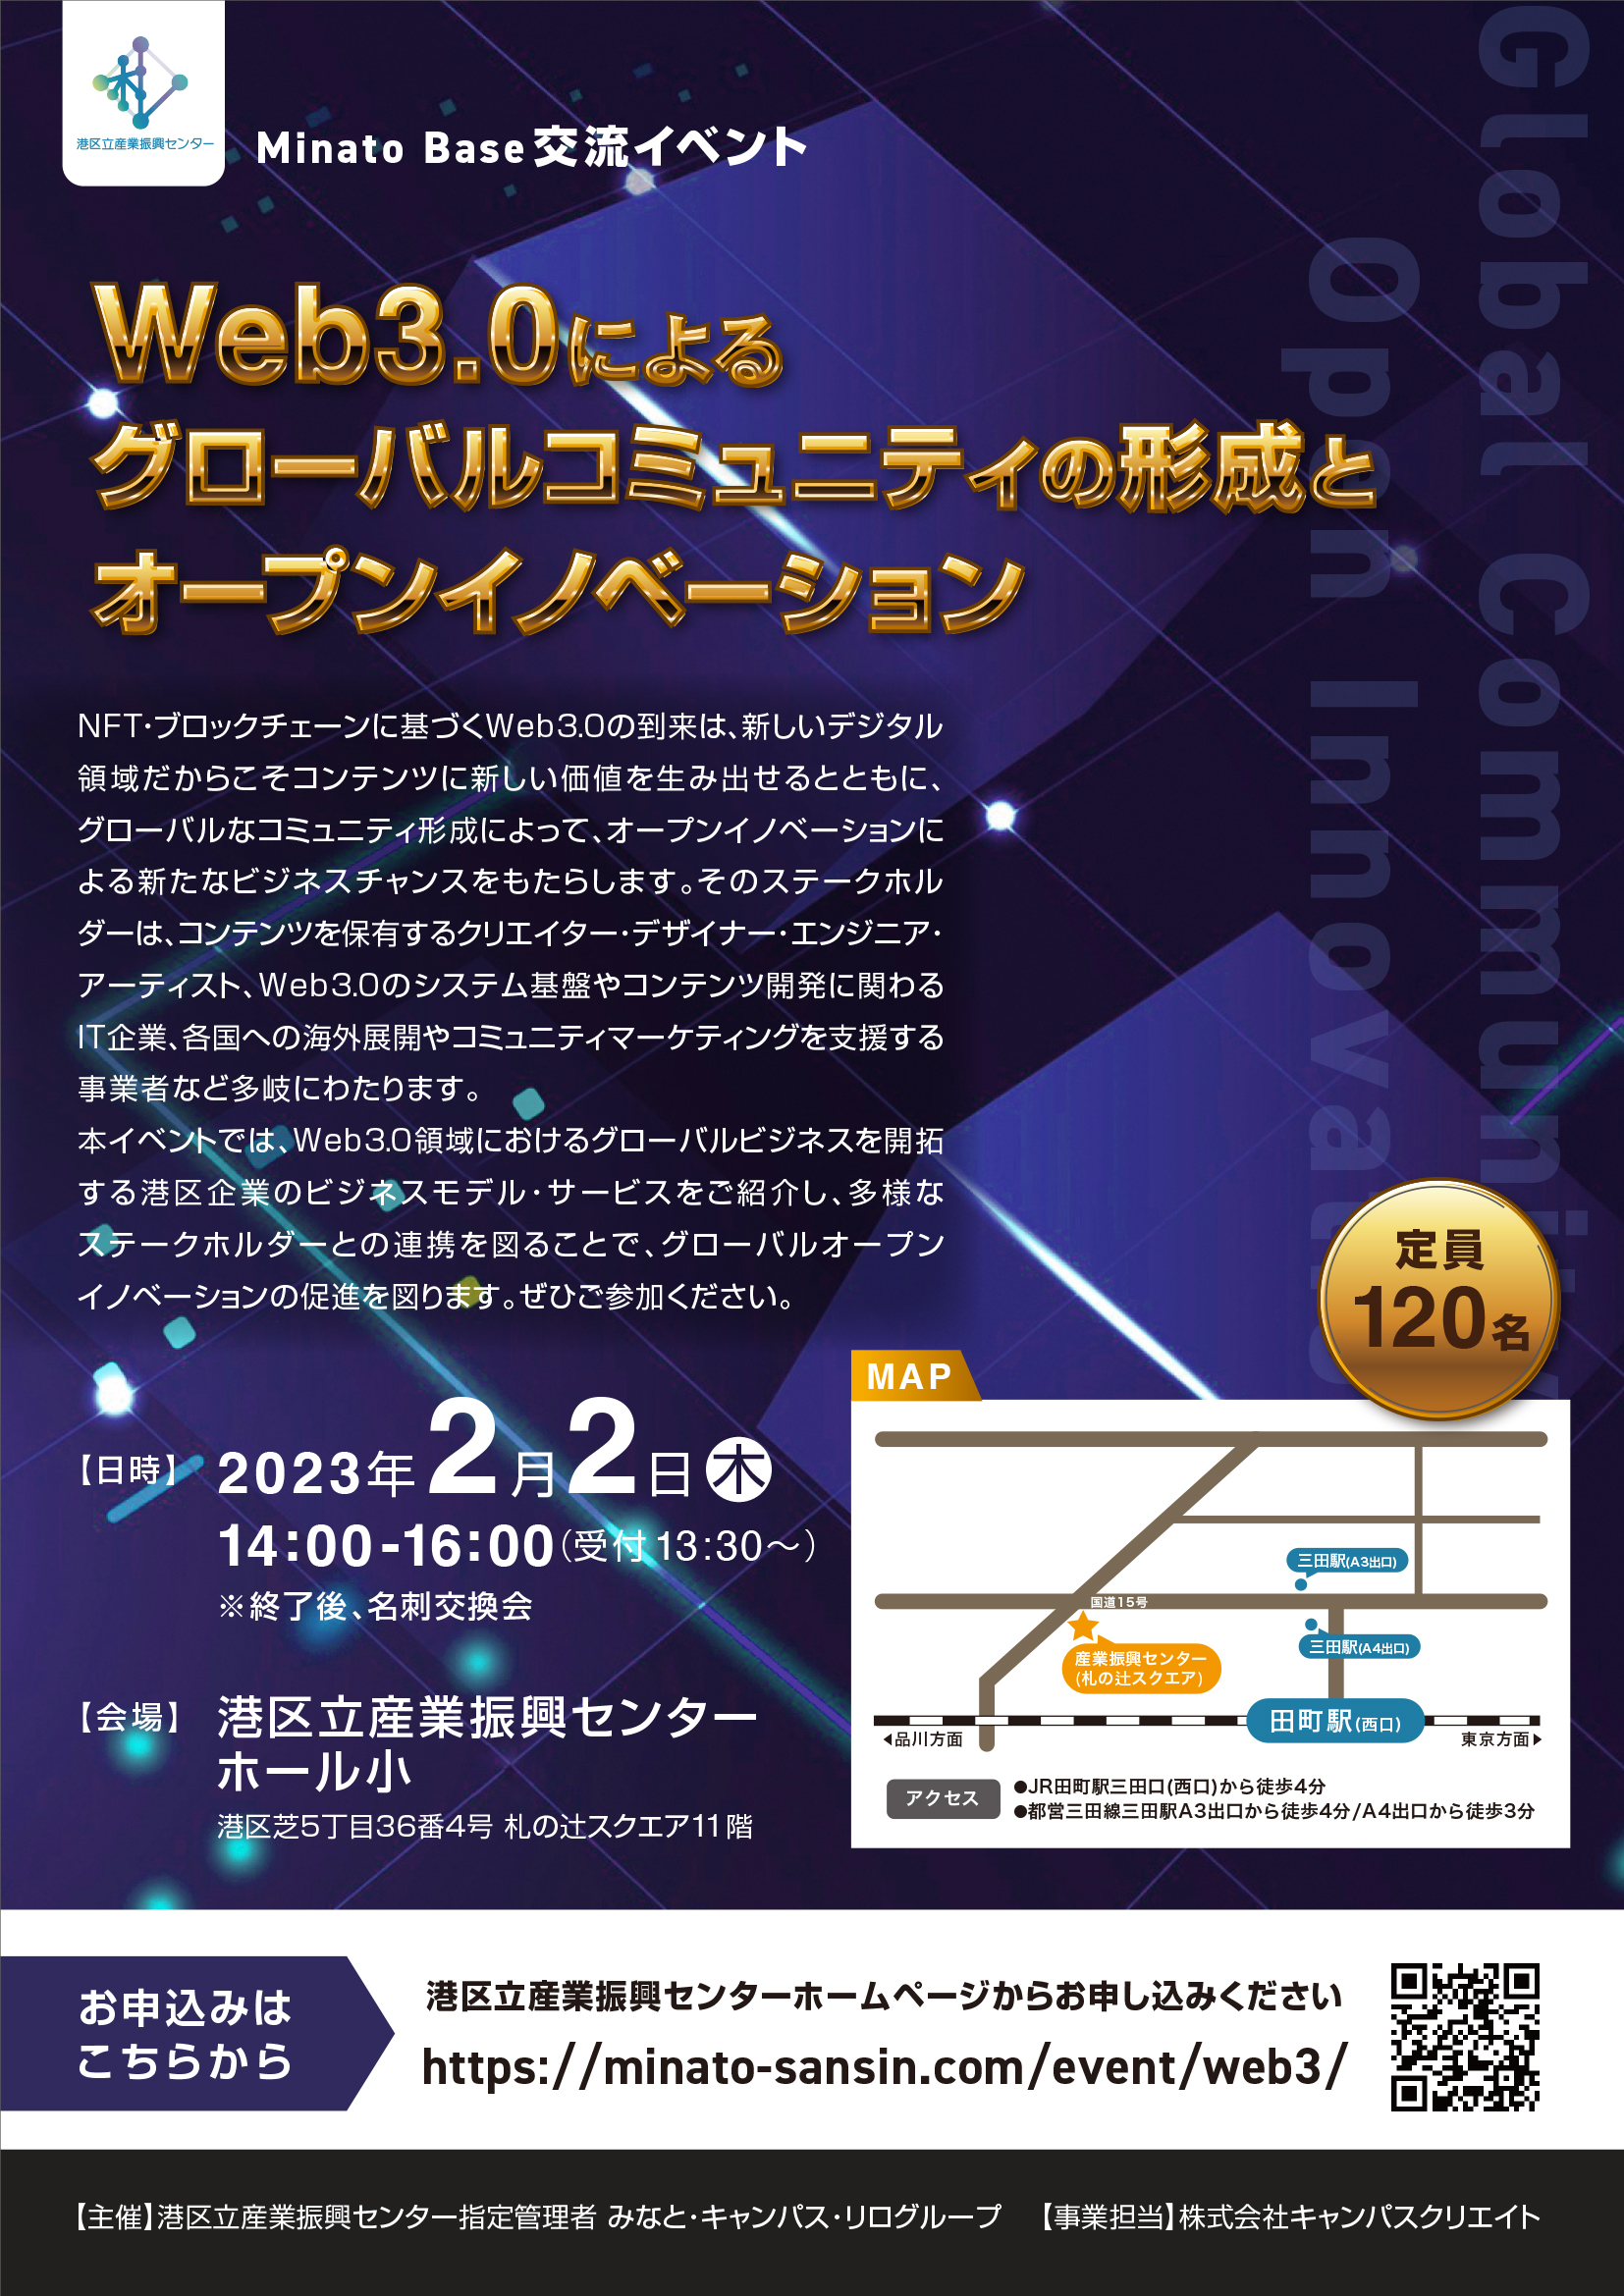 Web3.0によるグローバルコミュニティの形成とオープンイノベーション（MinatoBase交流イベント）